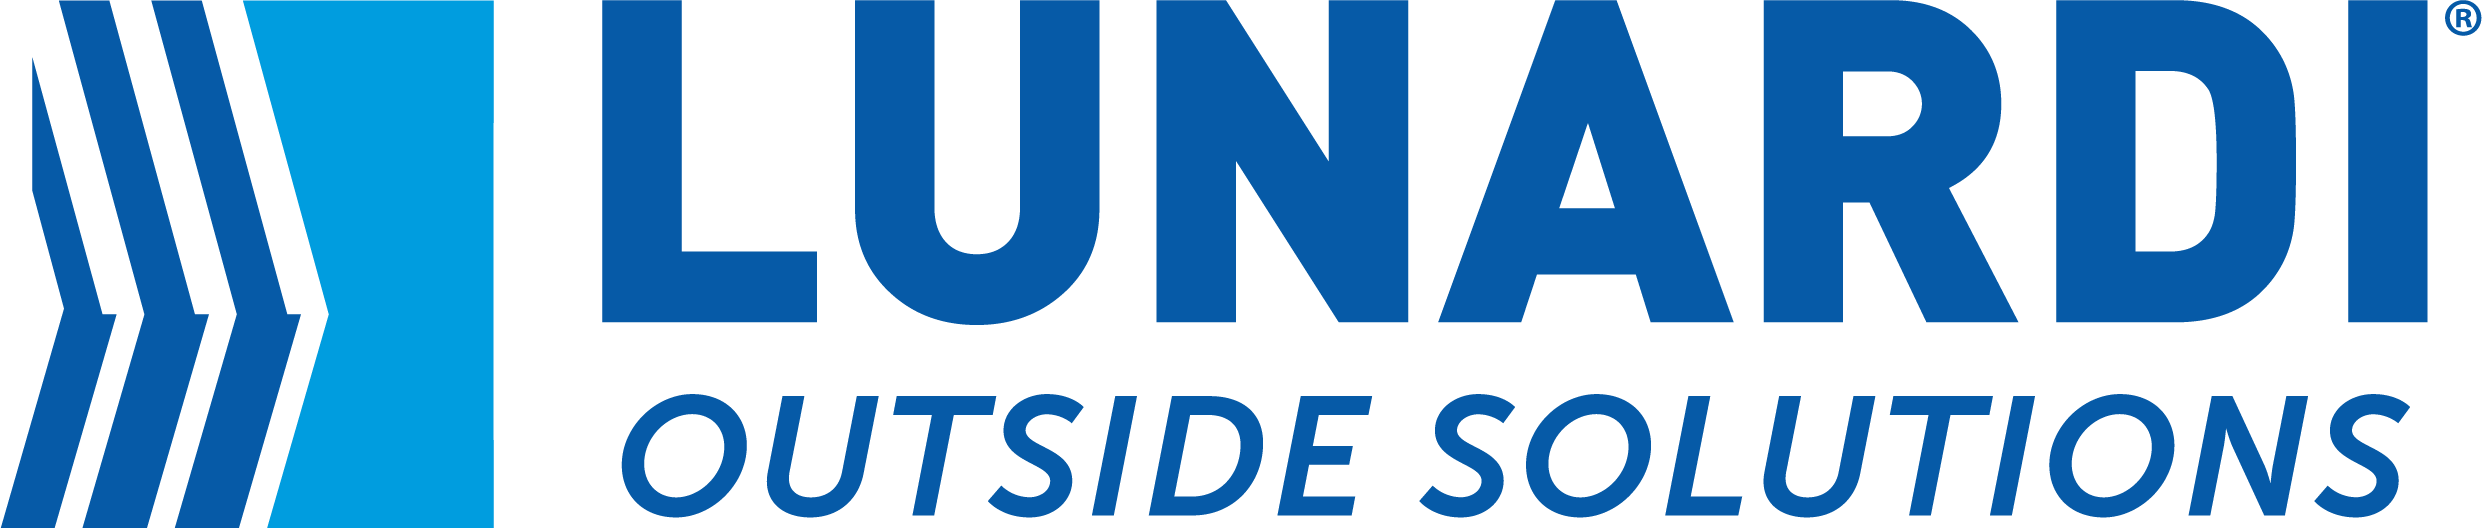 Logo Lunardi 2021